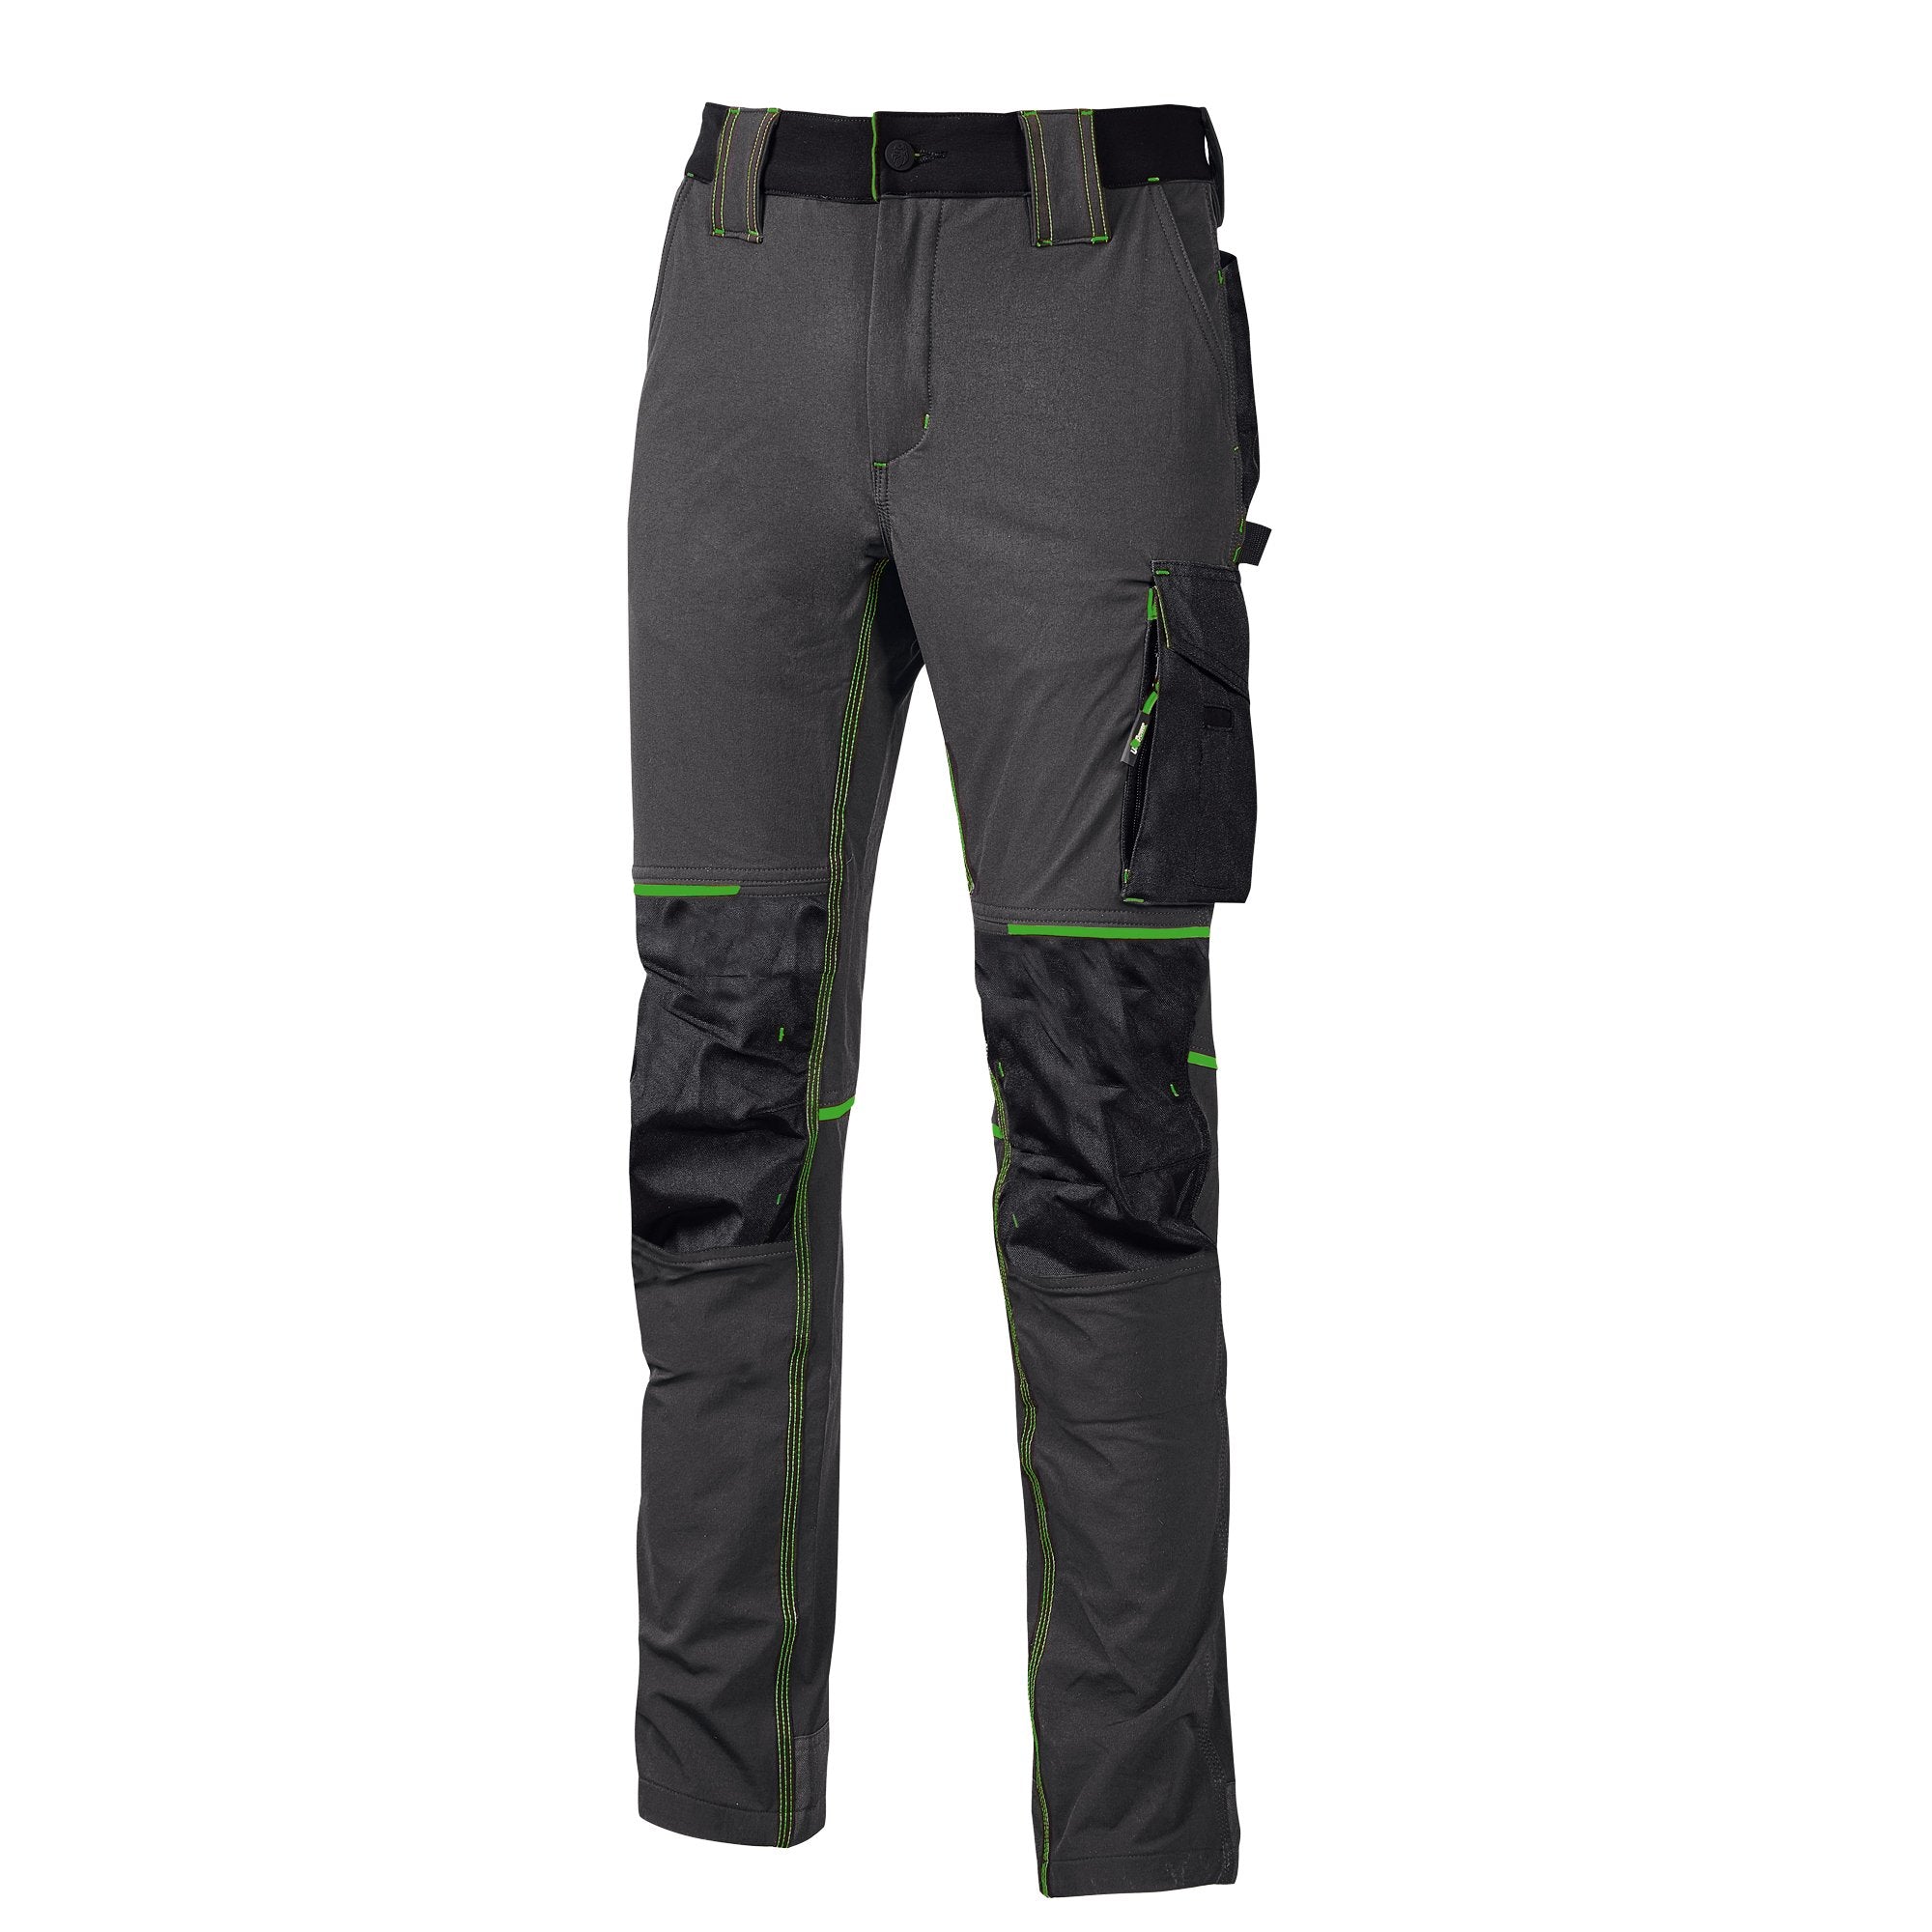 u-power-pantaloni-lavoro-atom-taglia-xxl-grigio-verde